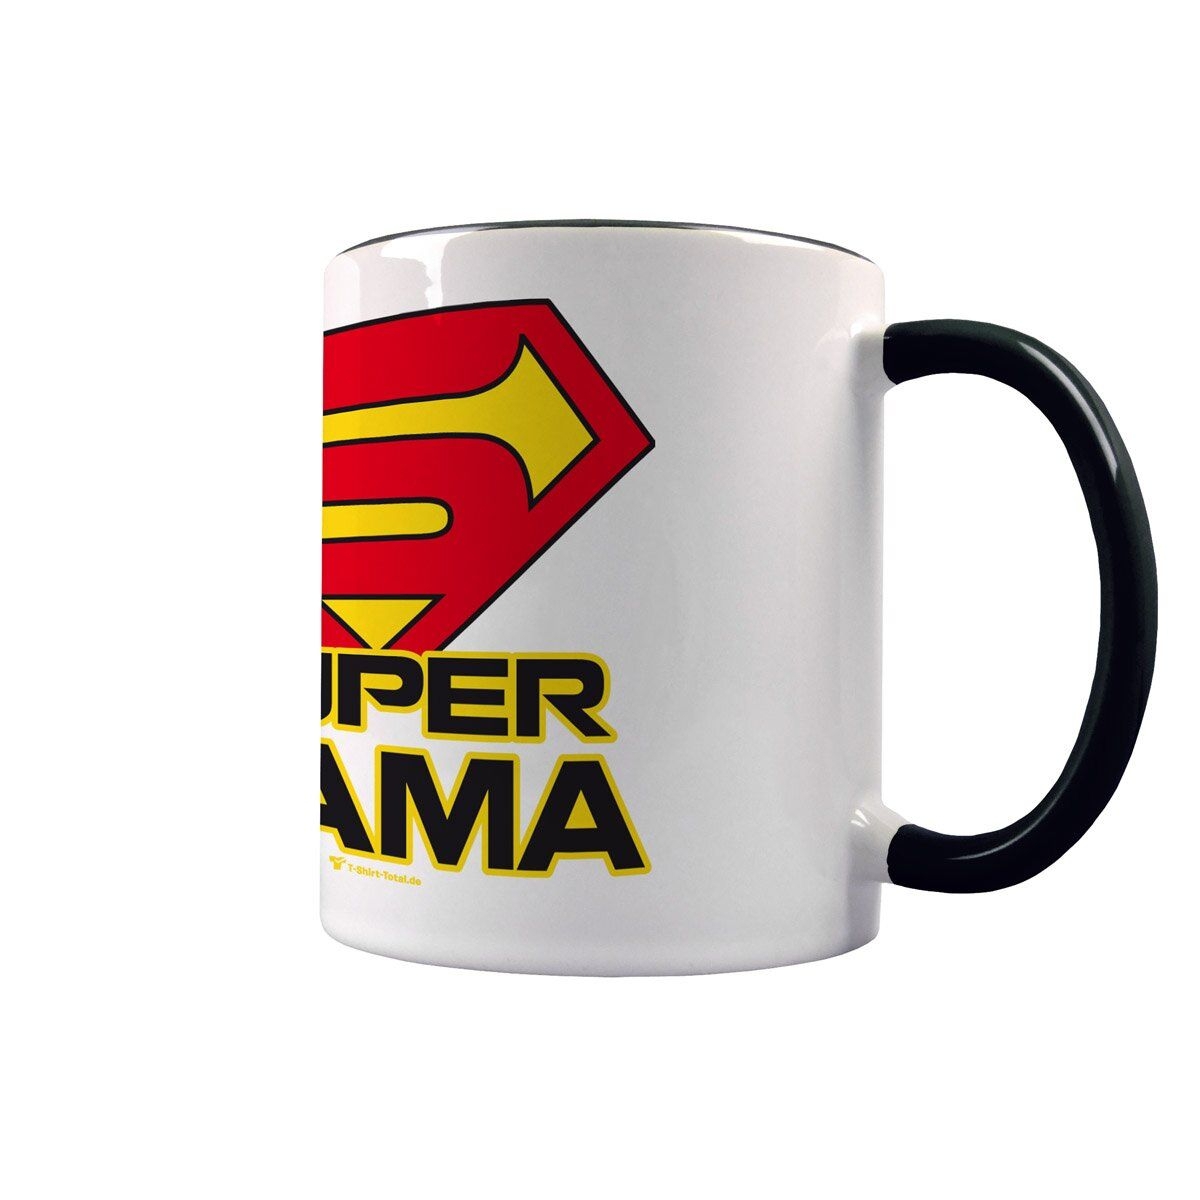 Super Mama Tasse schwarz / weiß